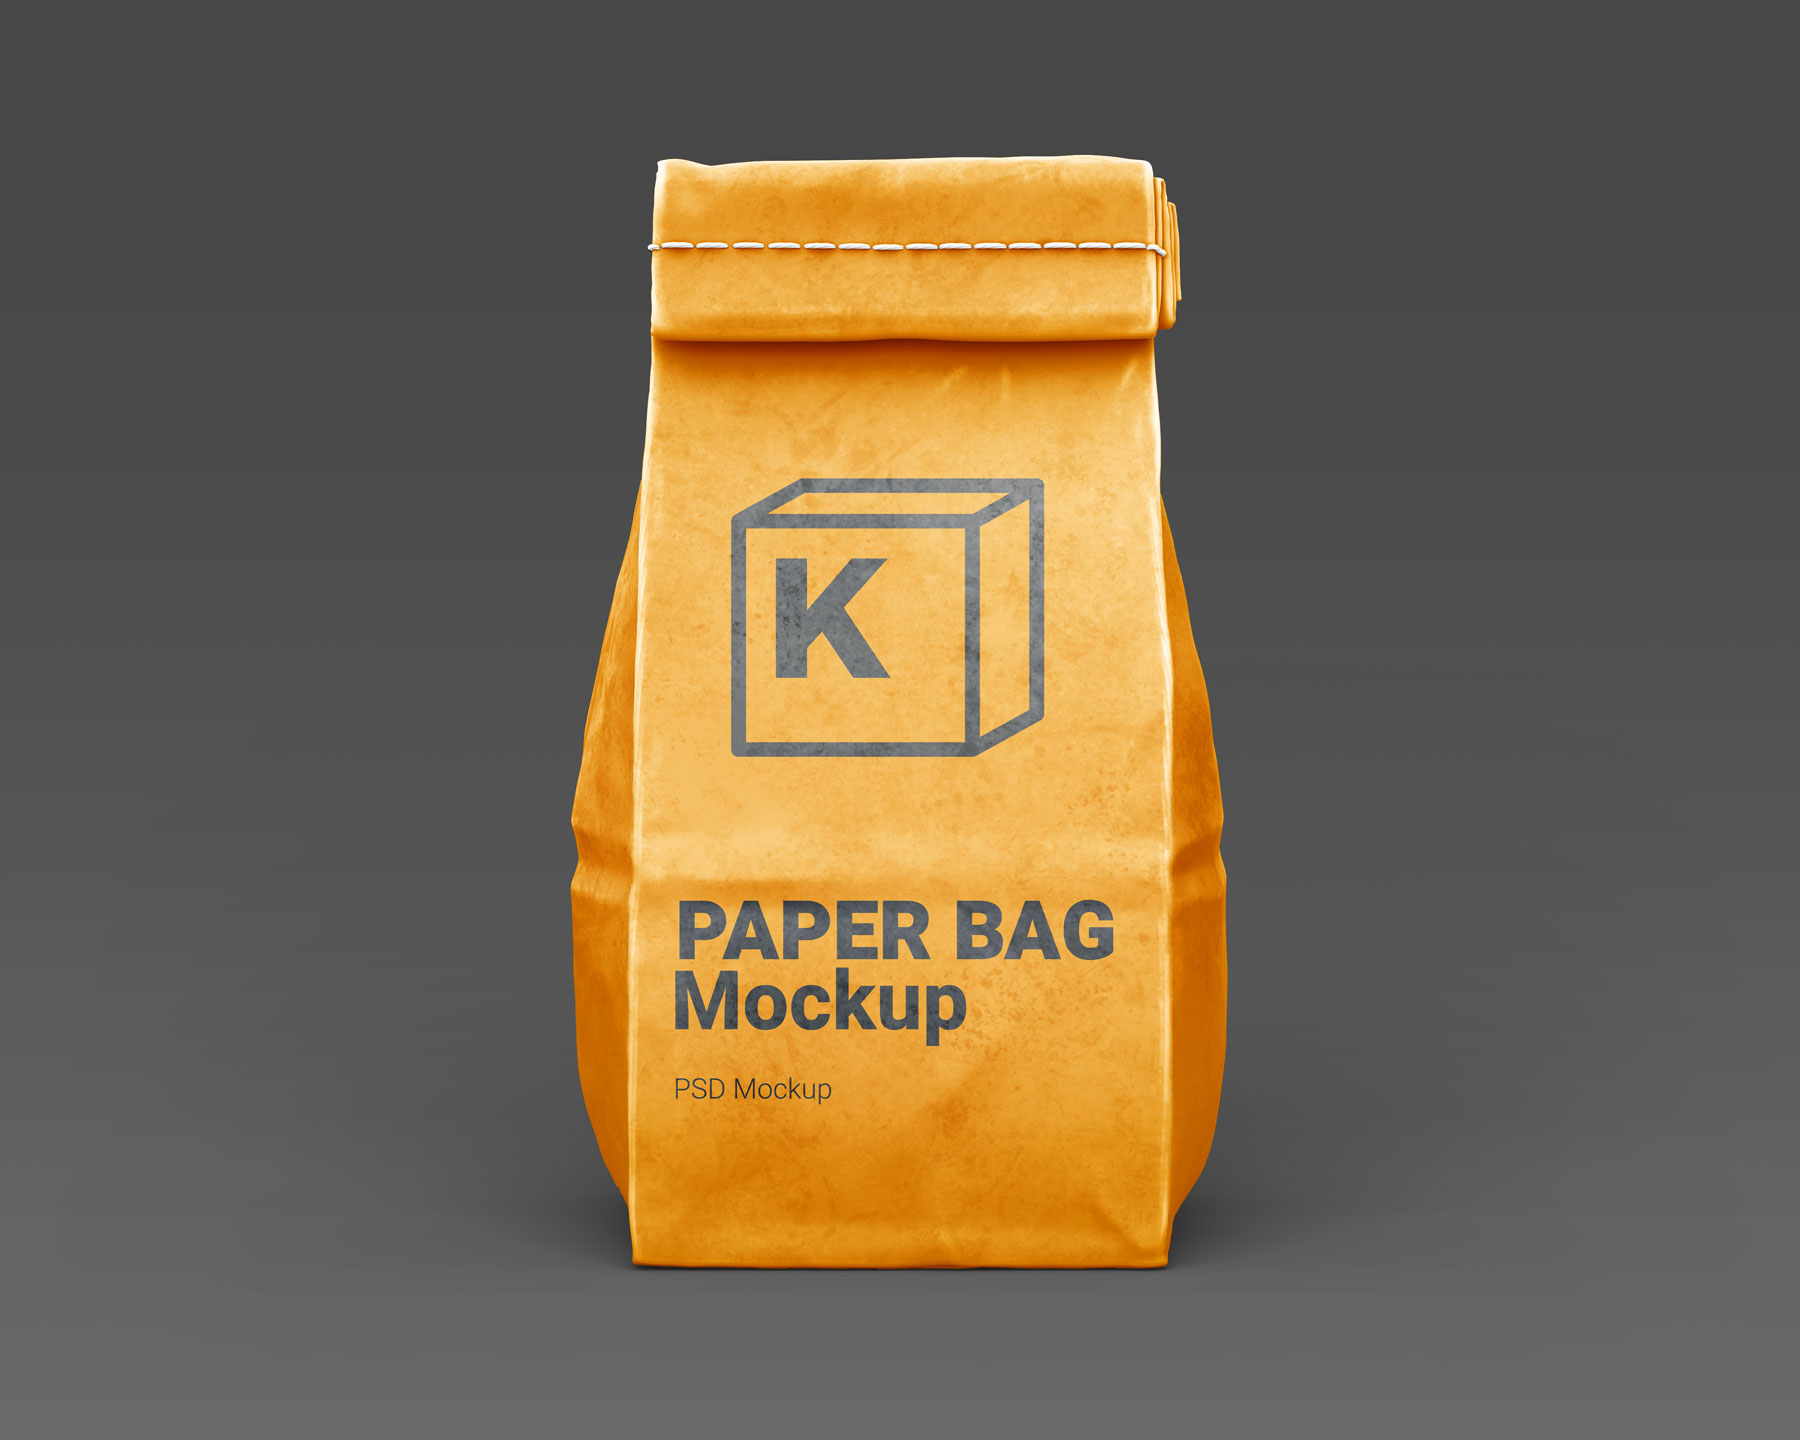 Disposable Paper Bag Mockups set